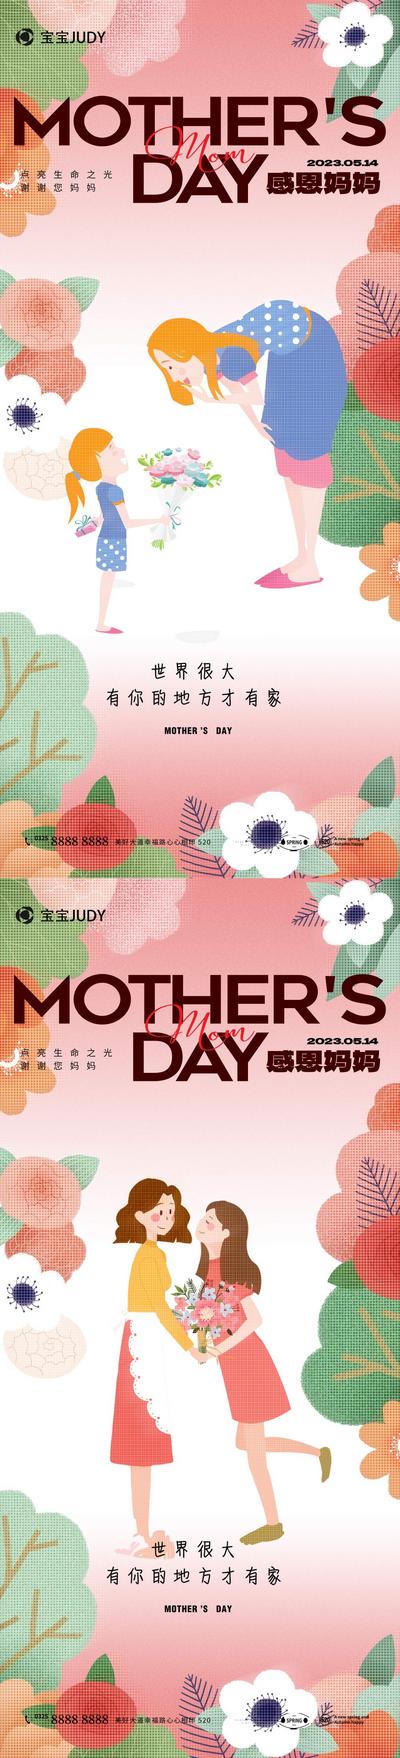 【南门网】广告 海报 节日 母亲节 插画 创意 个性 温馨 鲜花